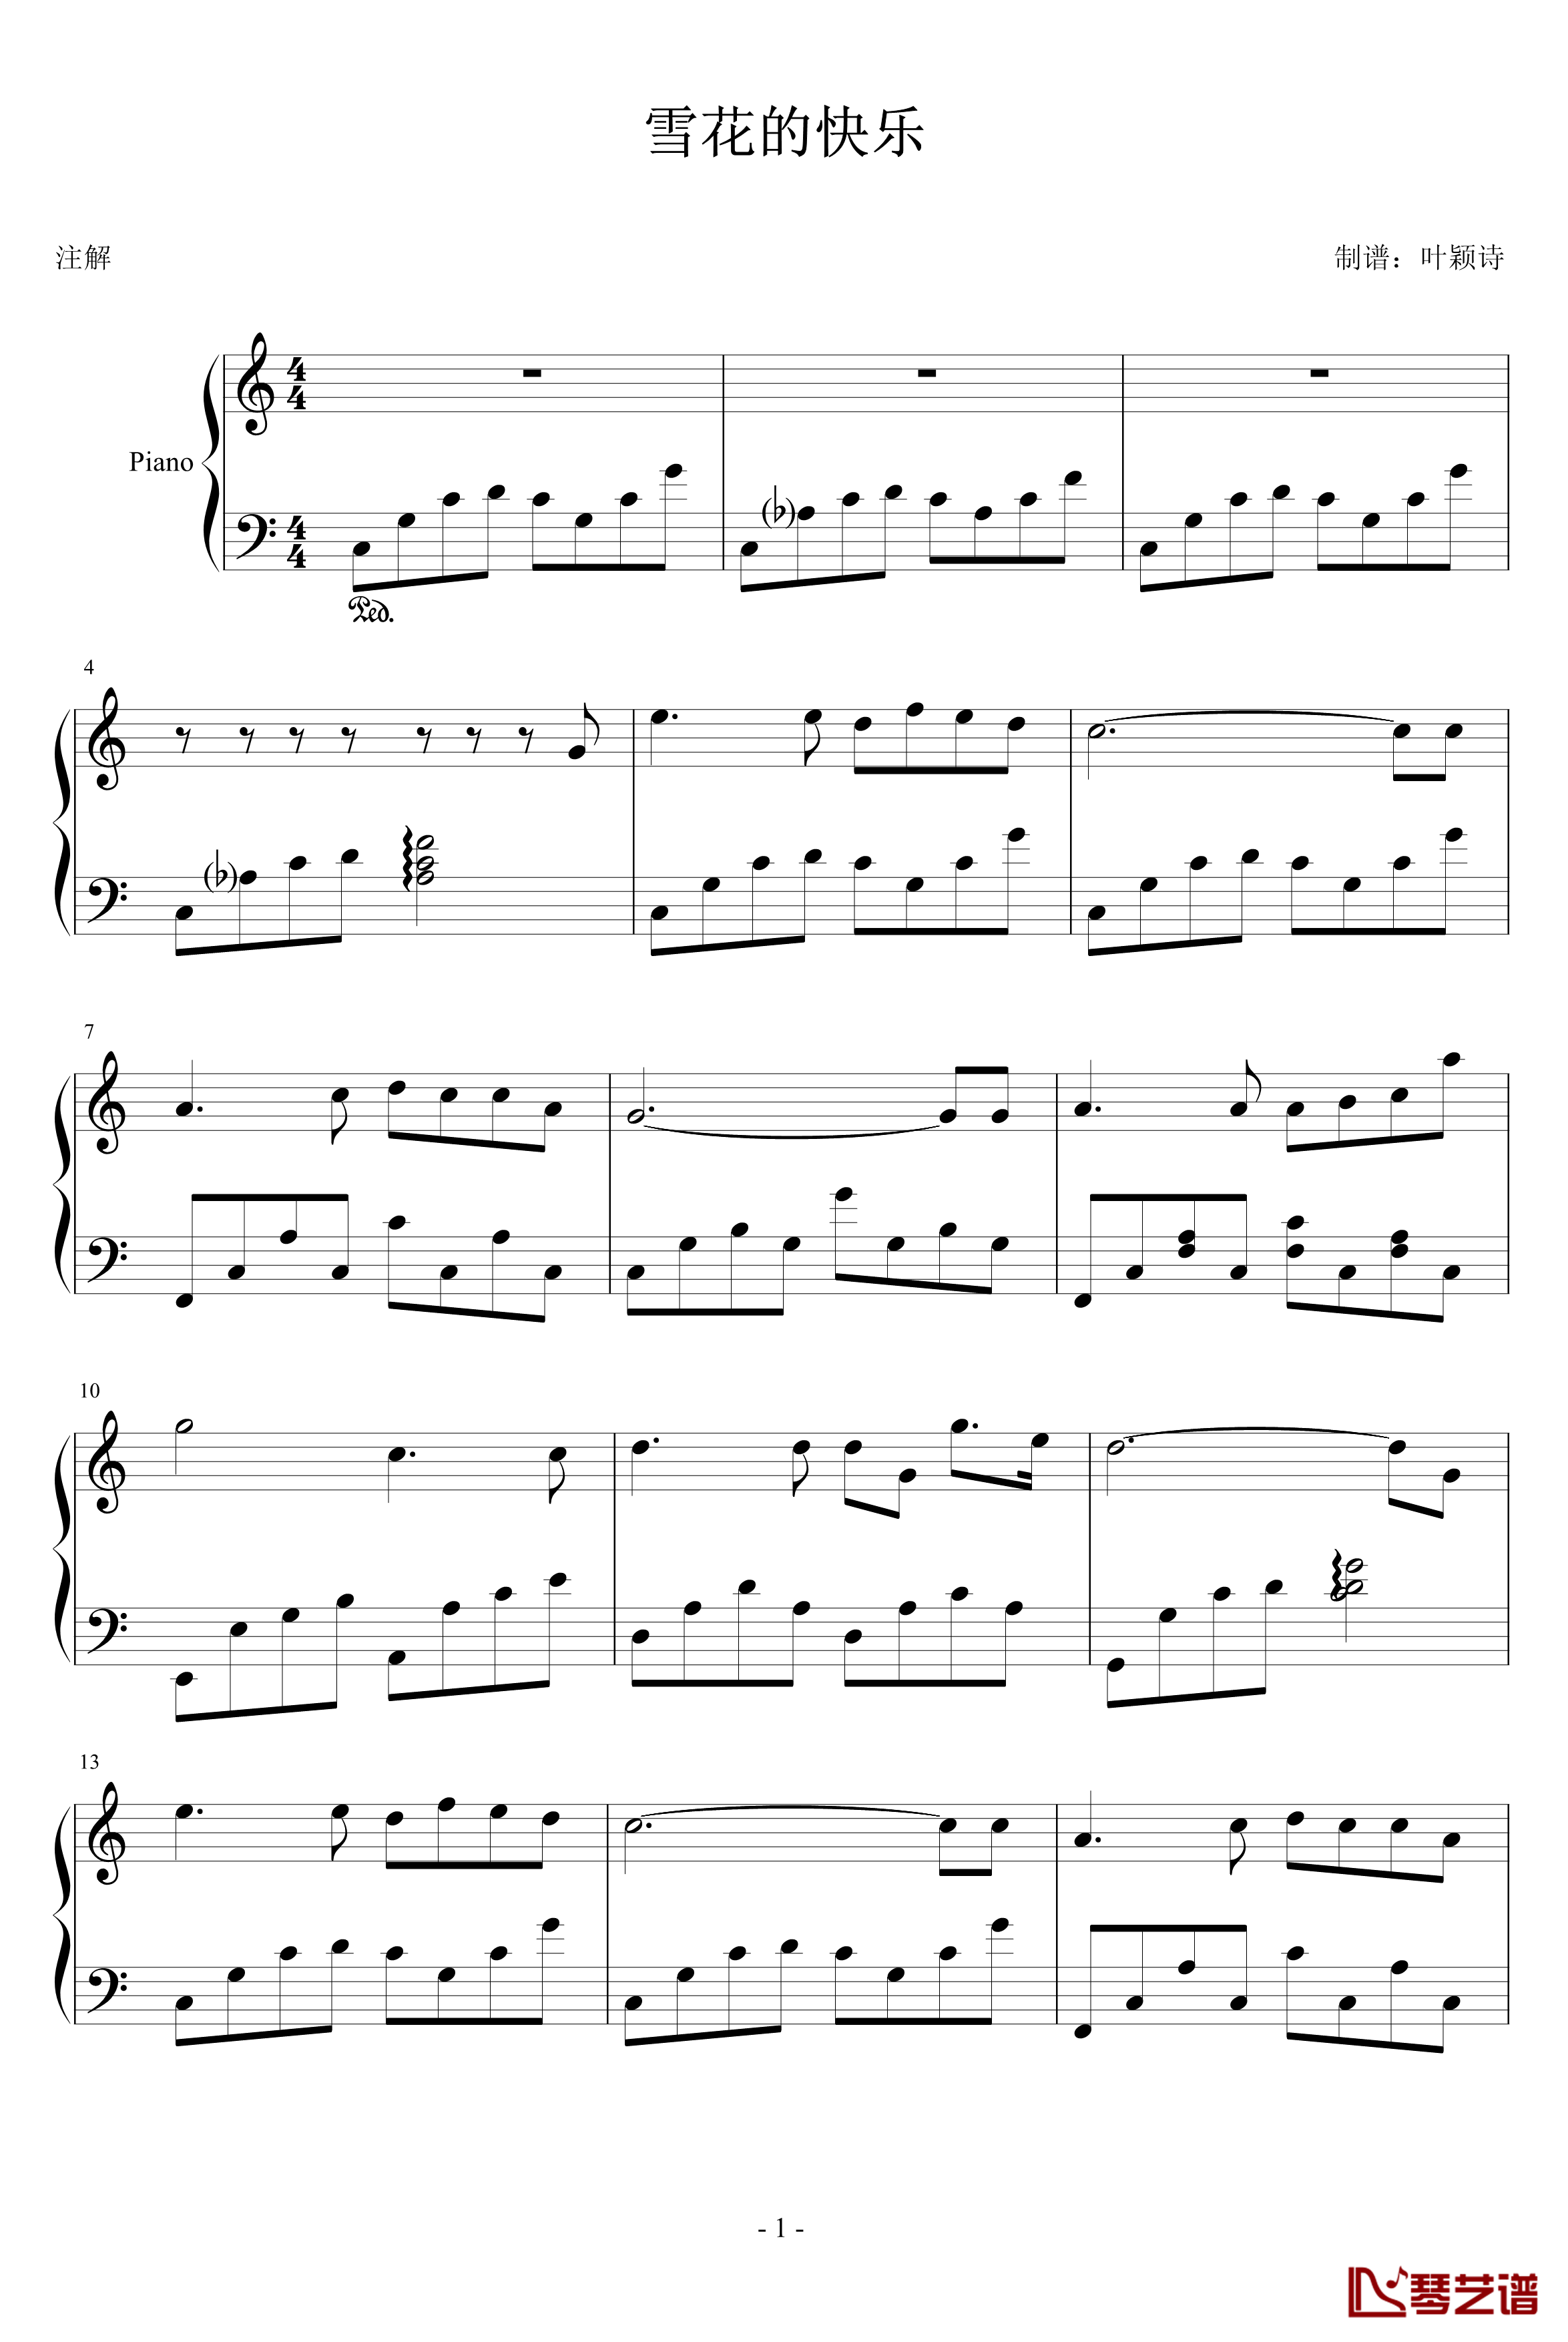 雪花的快乐钢琴谱-雅尼1